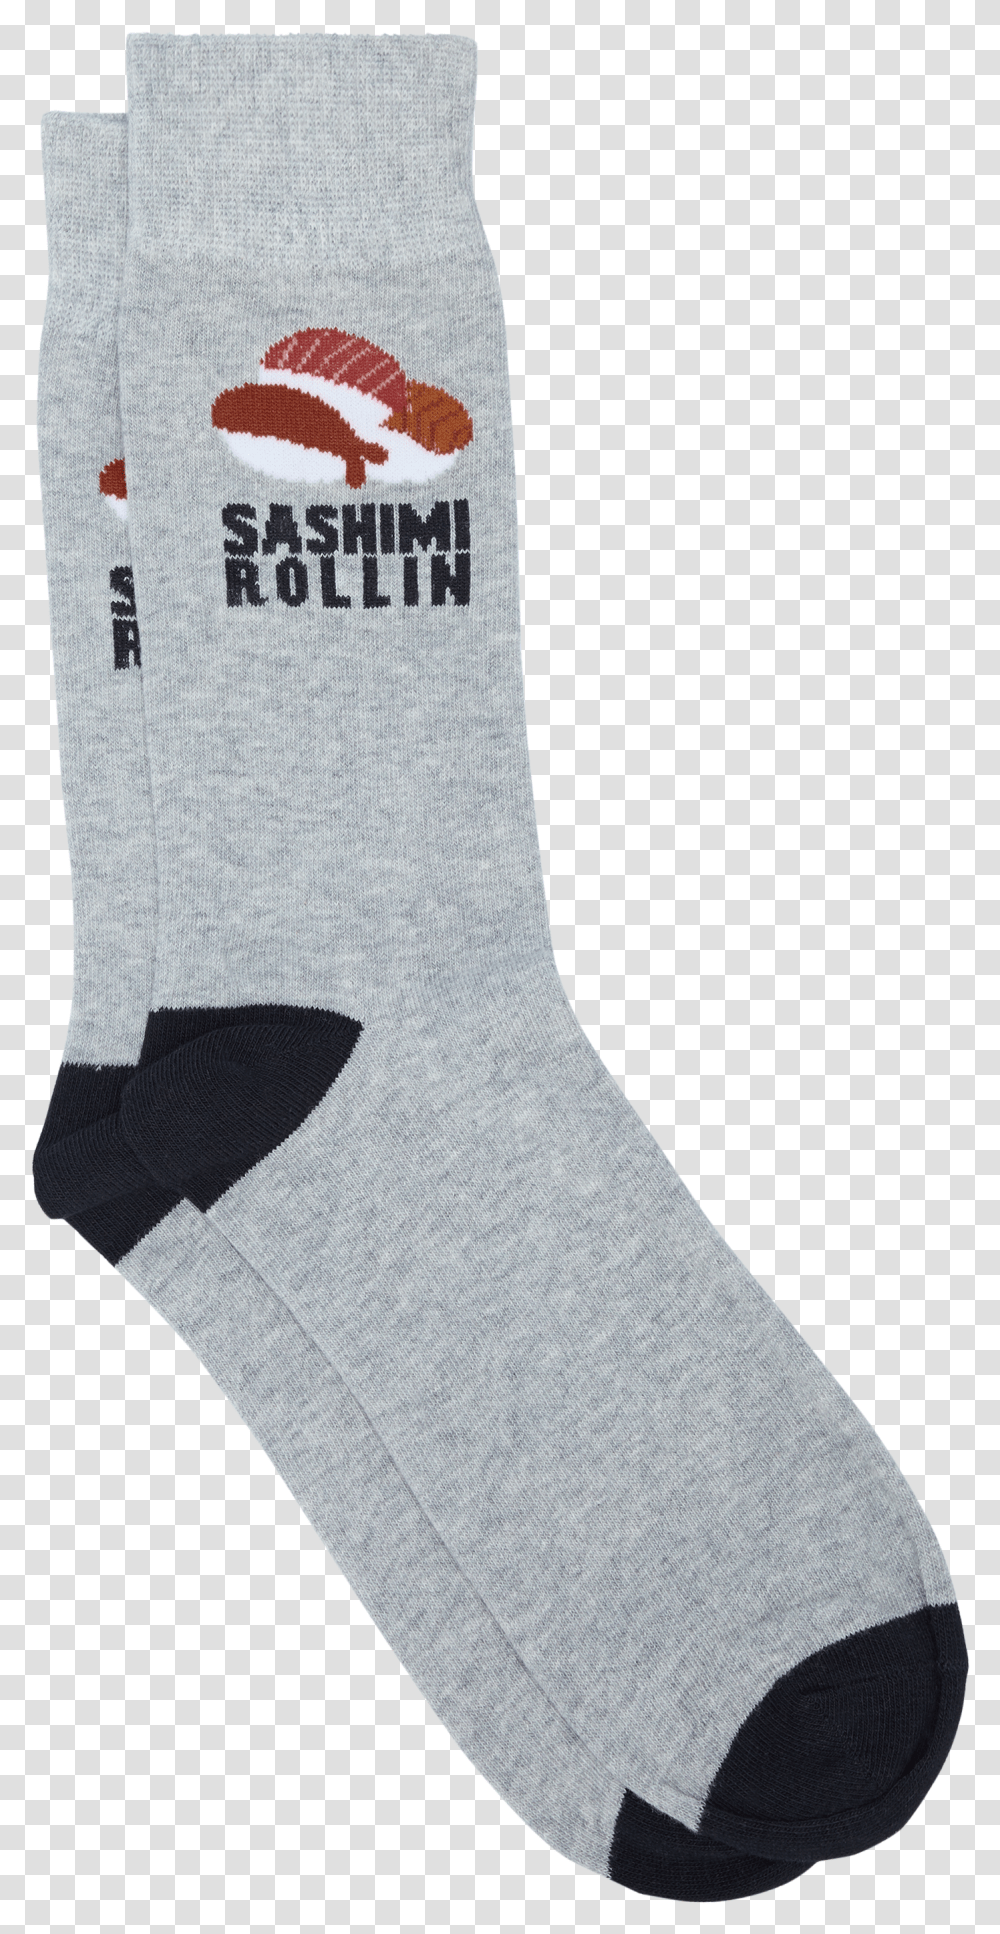 Sashimi Pun Socks Pun Socks Transparent Png